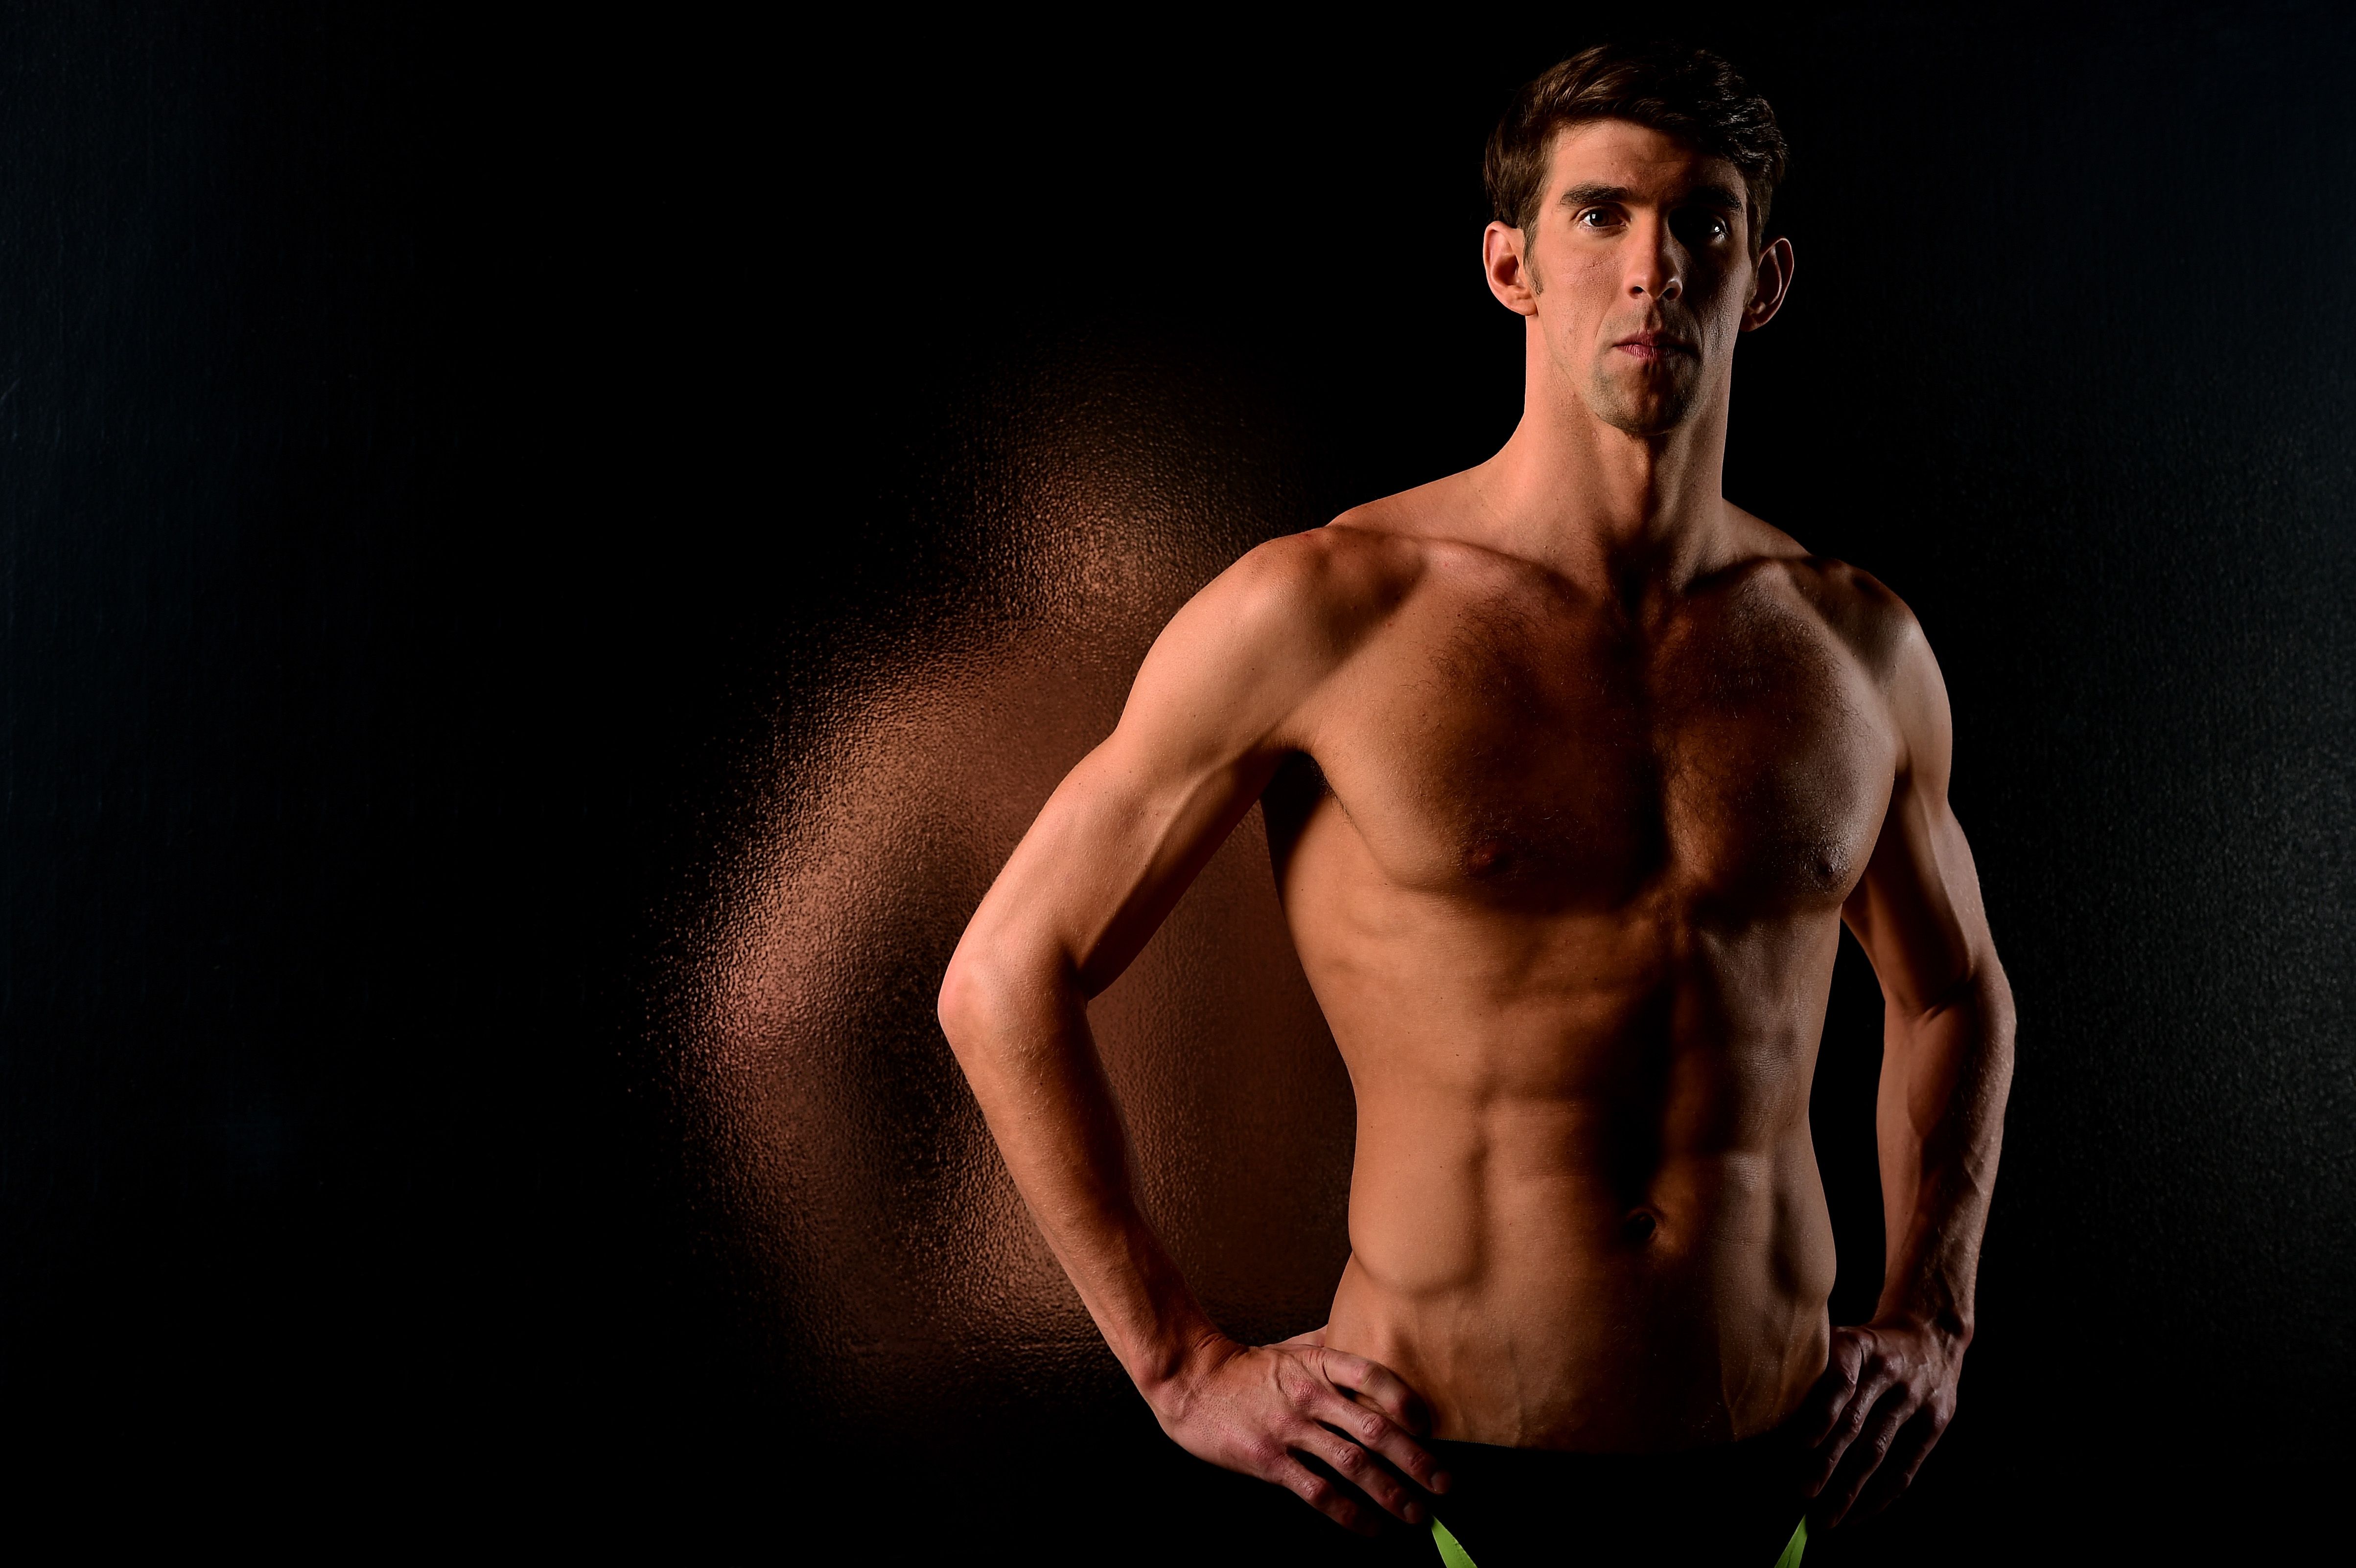 Qué fue de Michael Phelps: ascensión, caída y resurgimiento